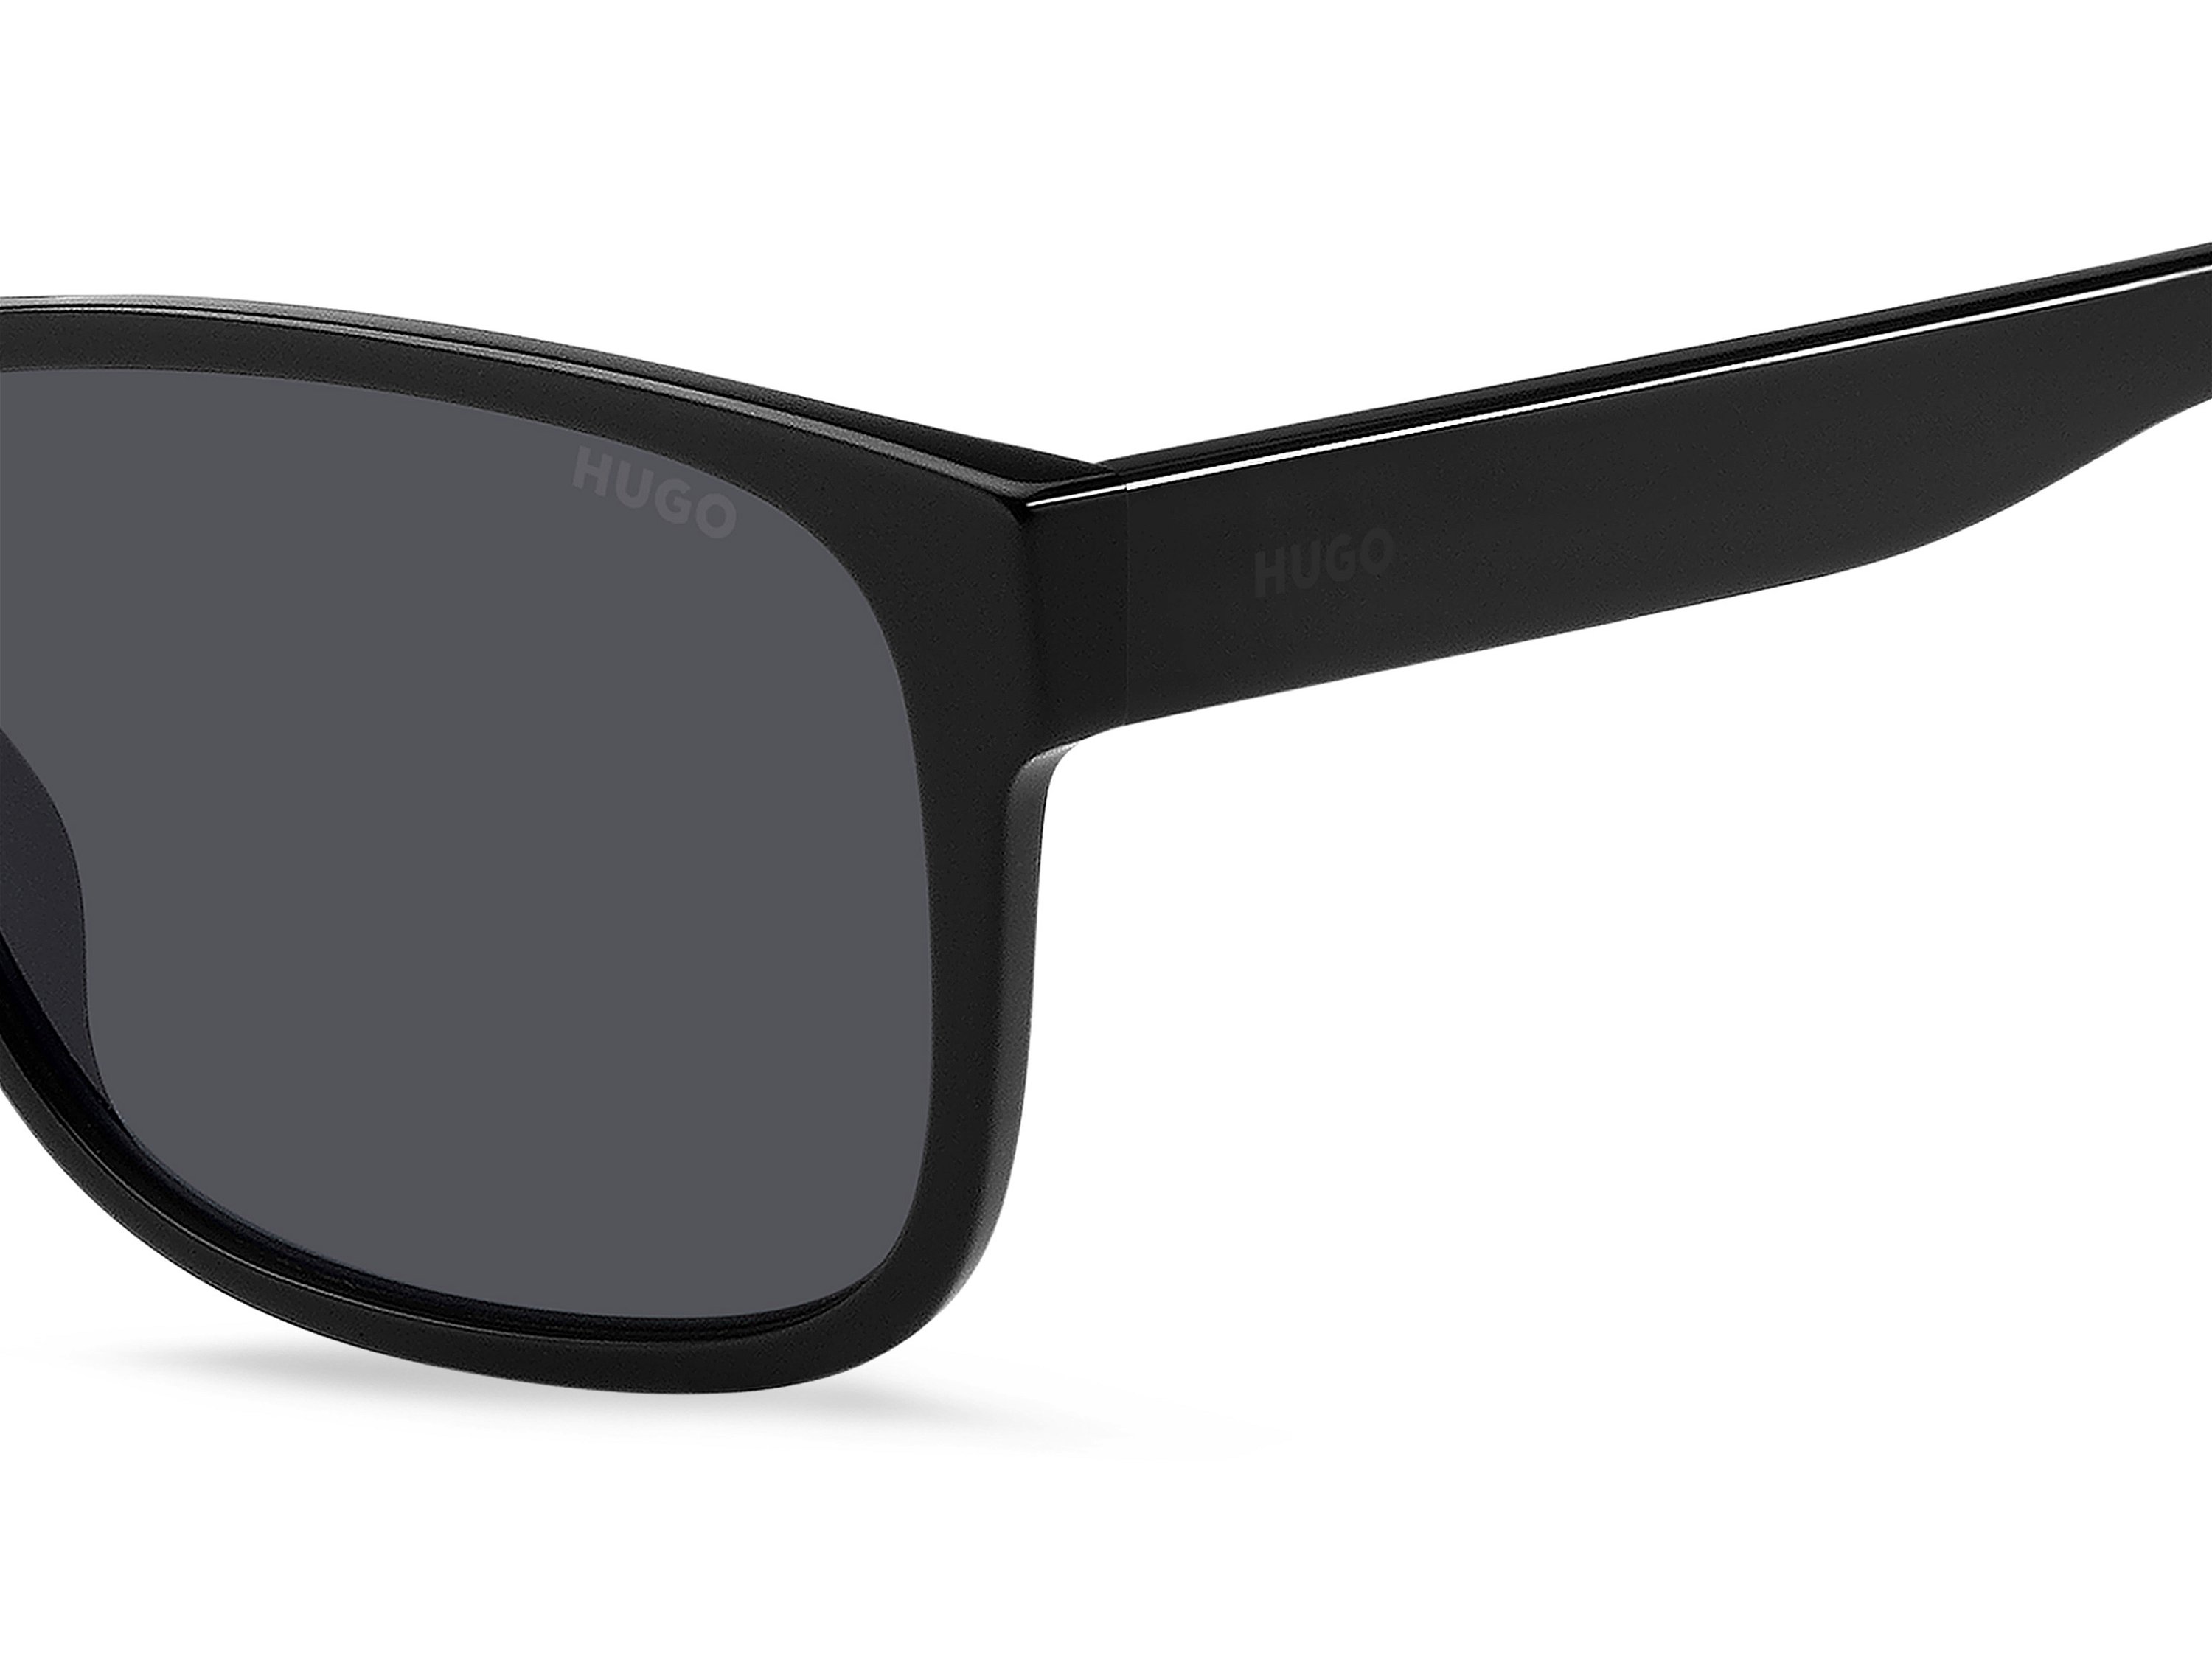 Das Bild zeigt die Sonnenbrille HG1260/S 807 von der Marke Hugo in schwarz.